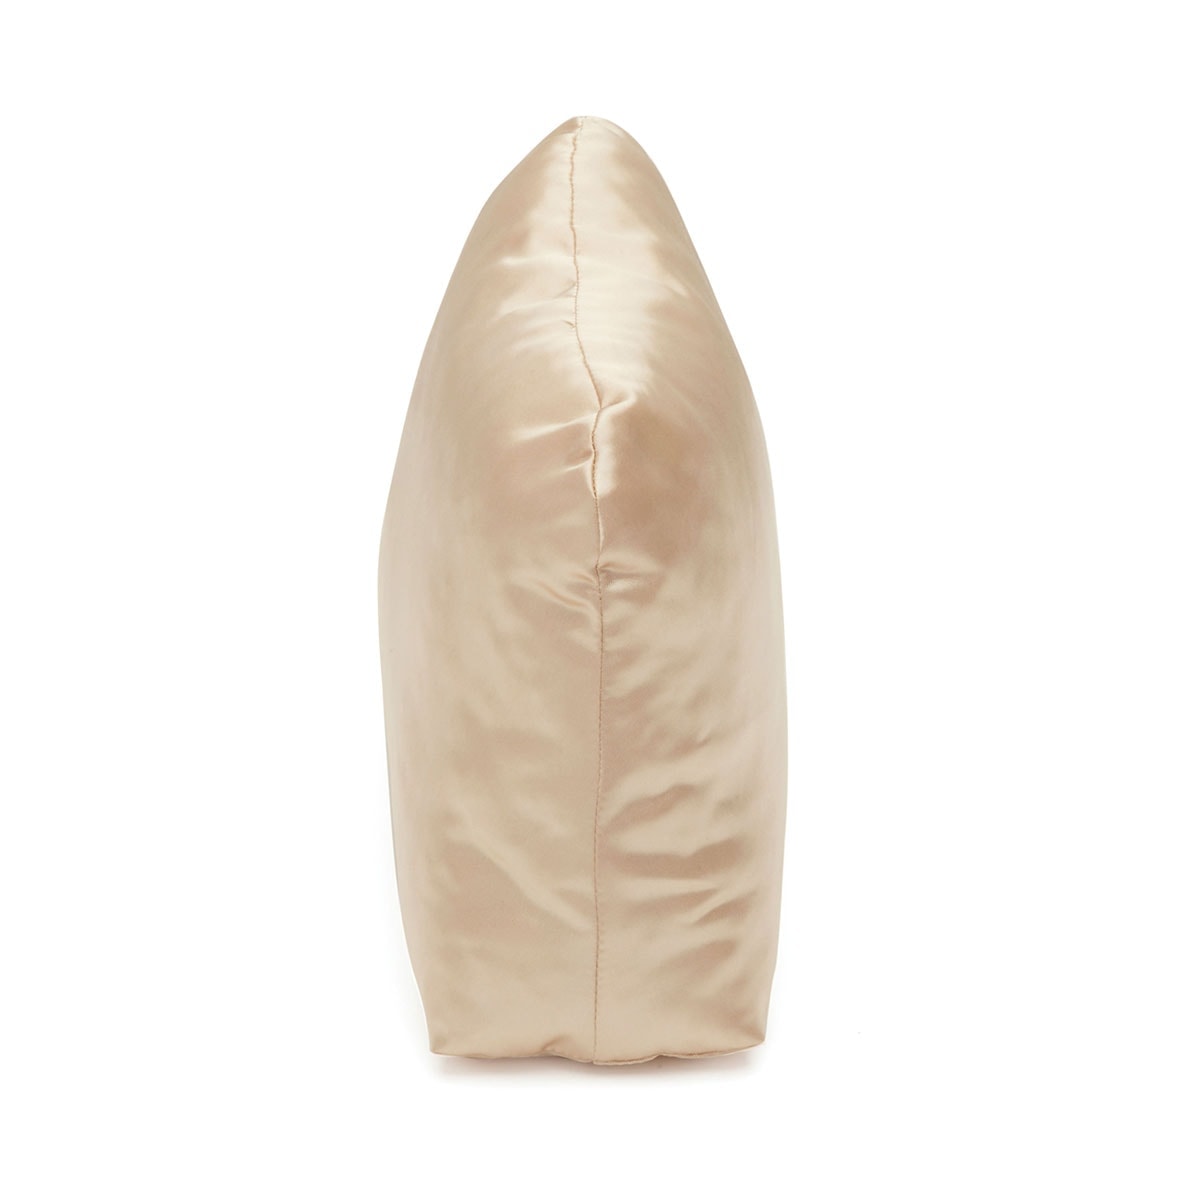 Purse Pillow for Hermes Birkin Bag Models, Bag Shaper Pillow